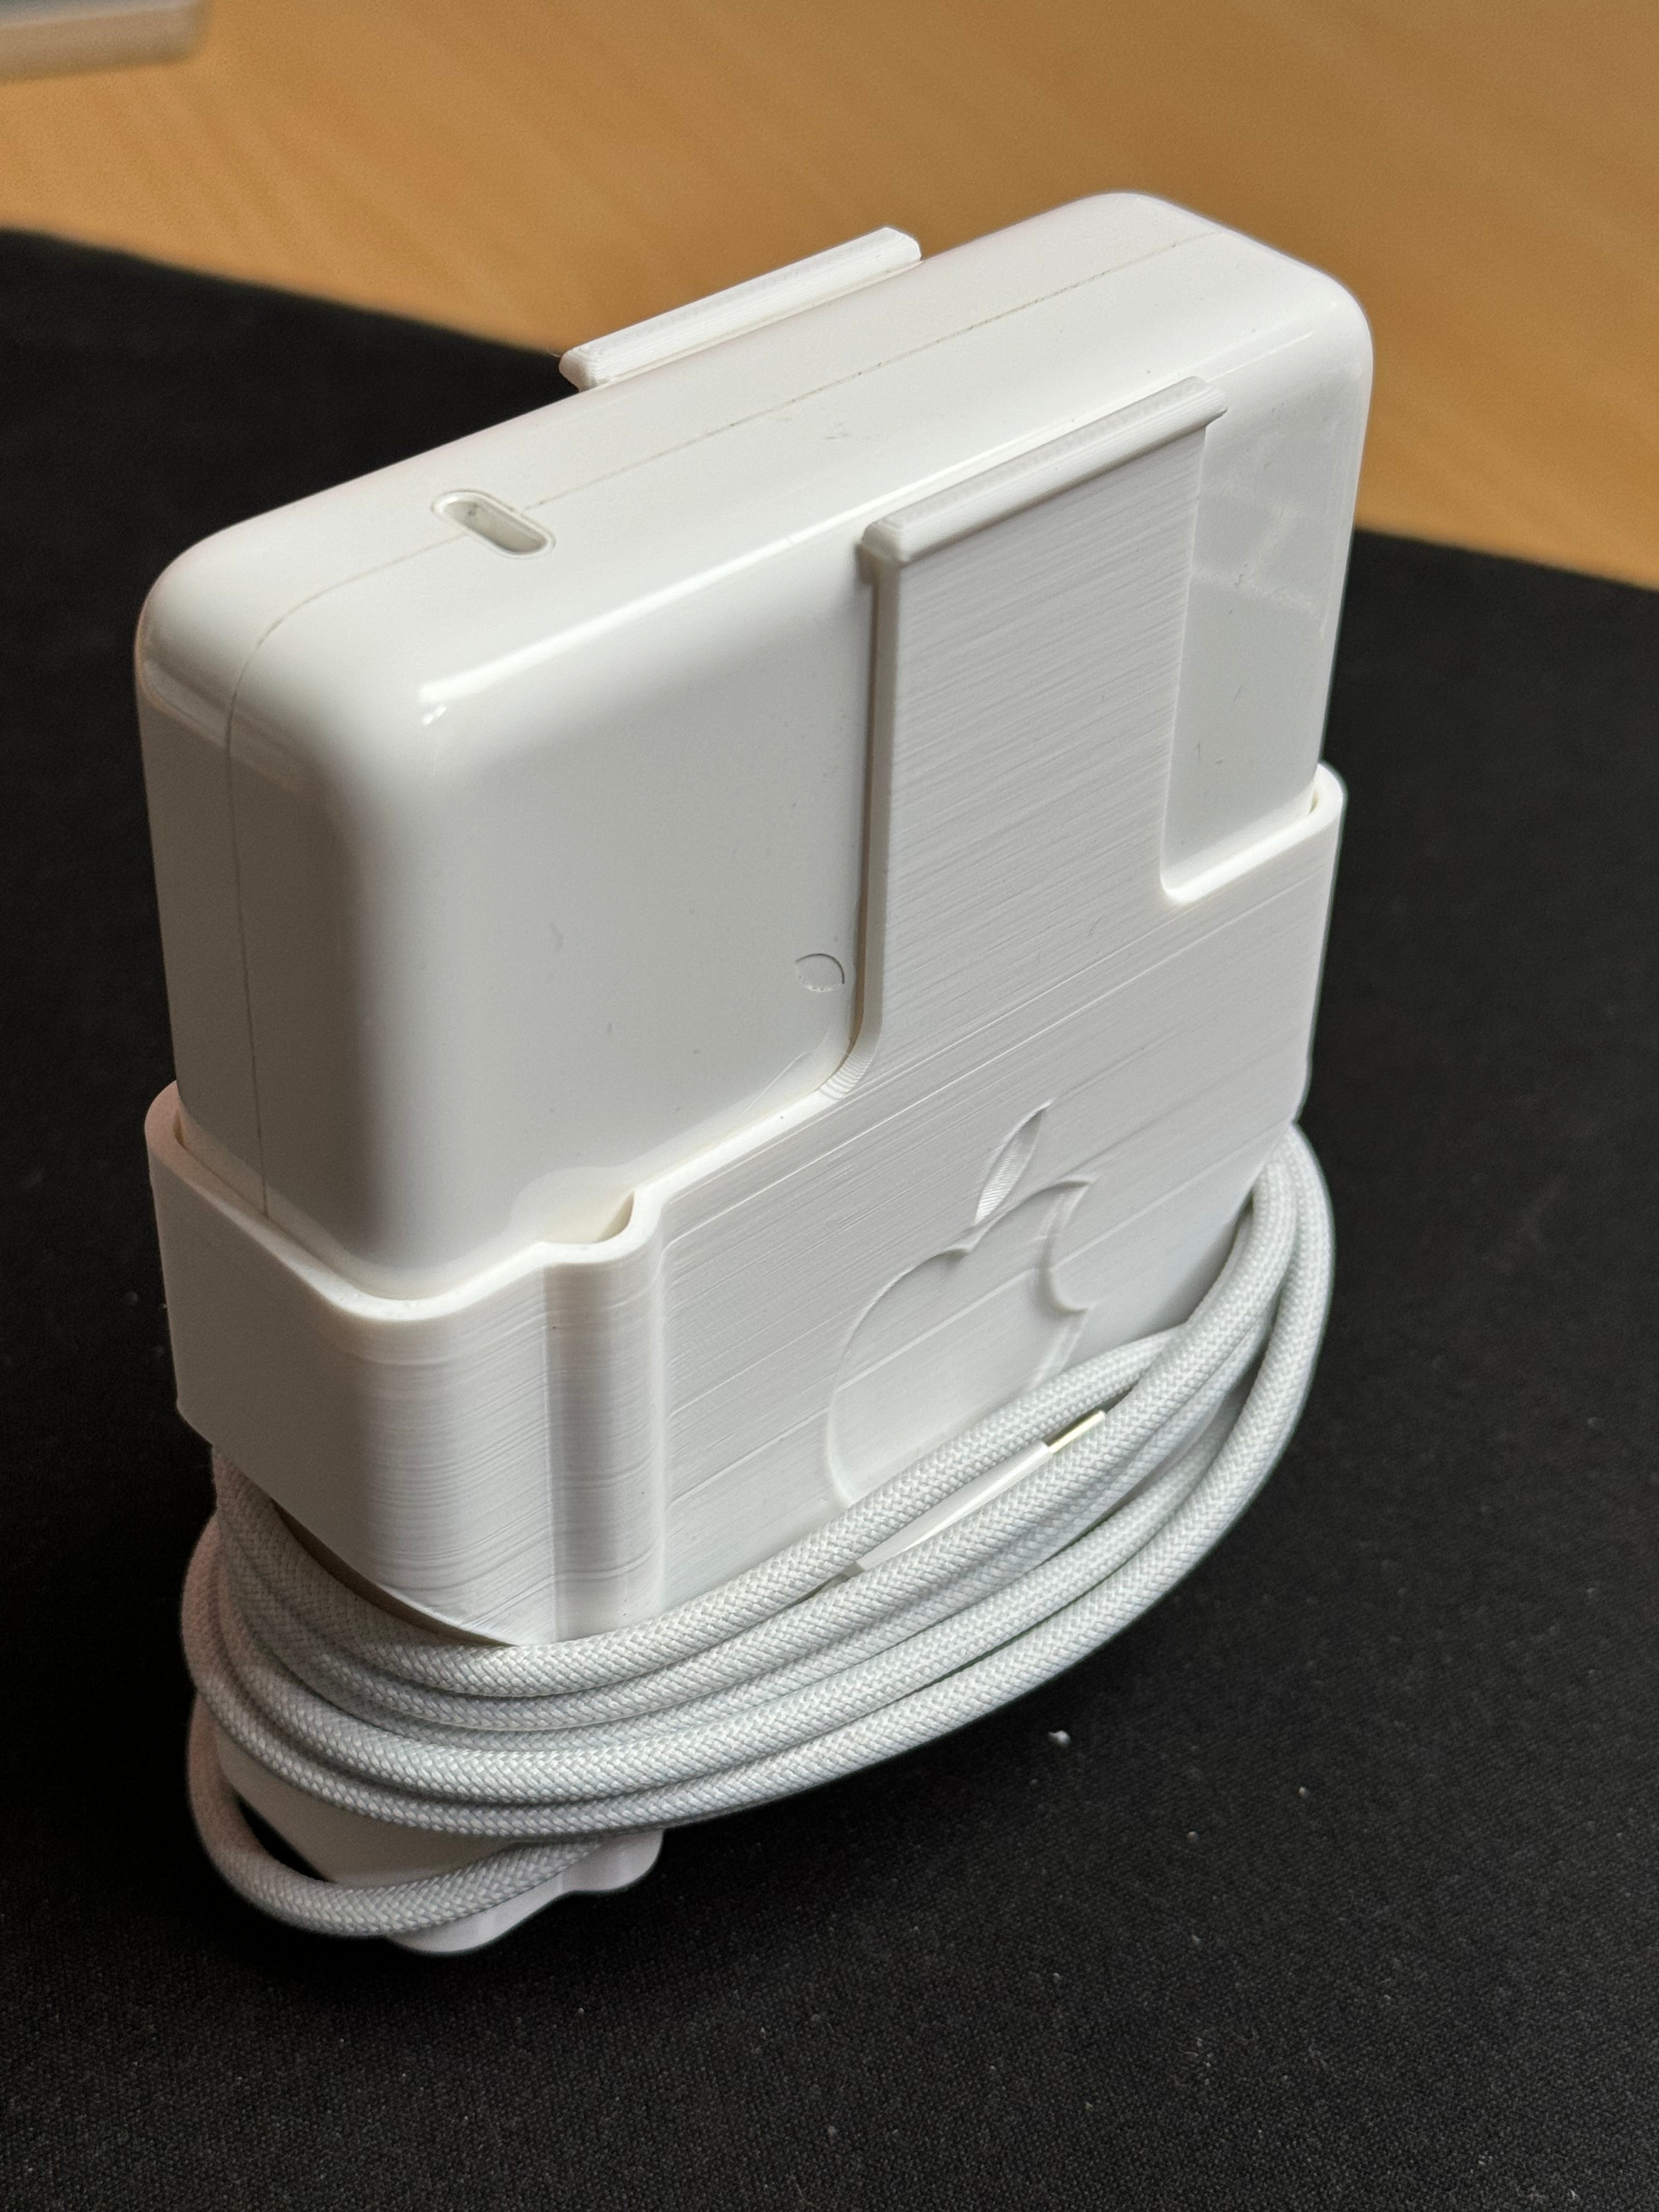 Protección y gestor de cables para el cargador de 140 W del Macbook Pro